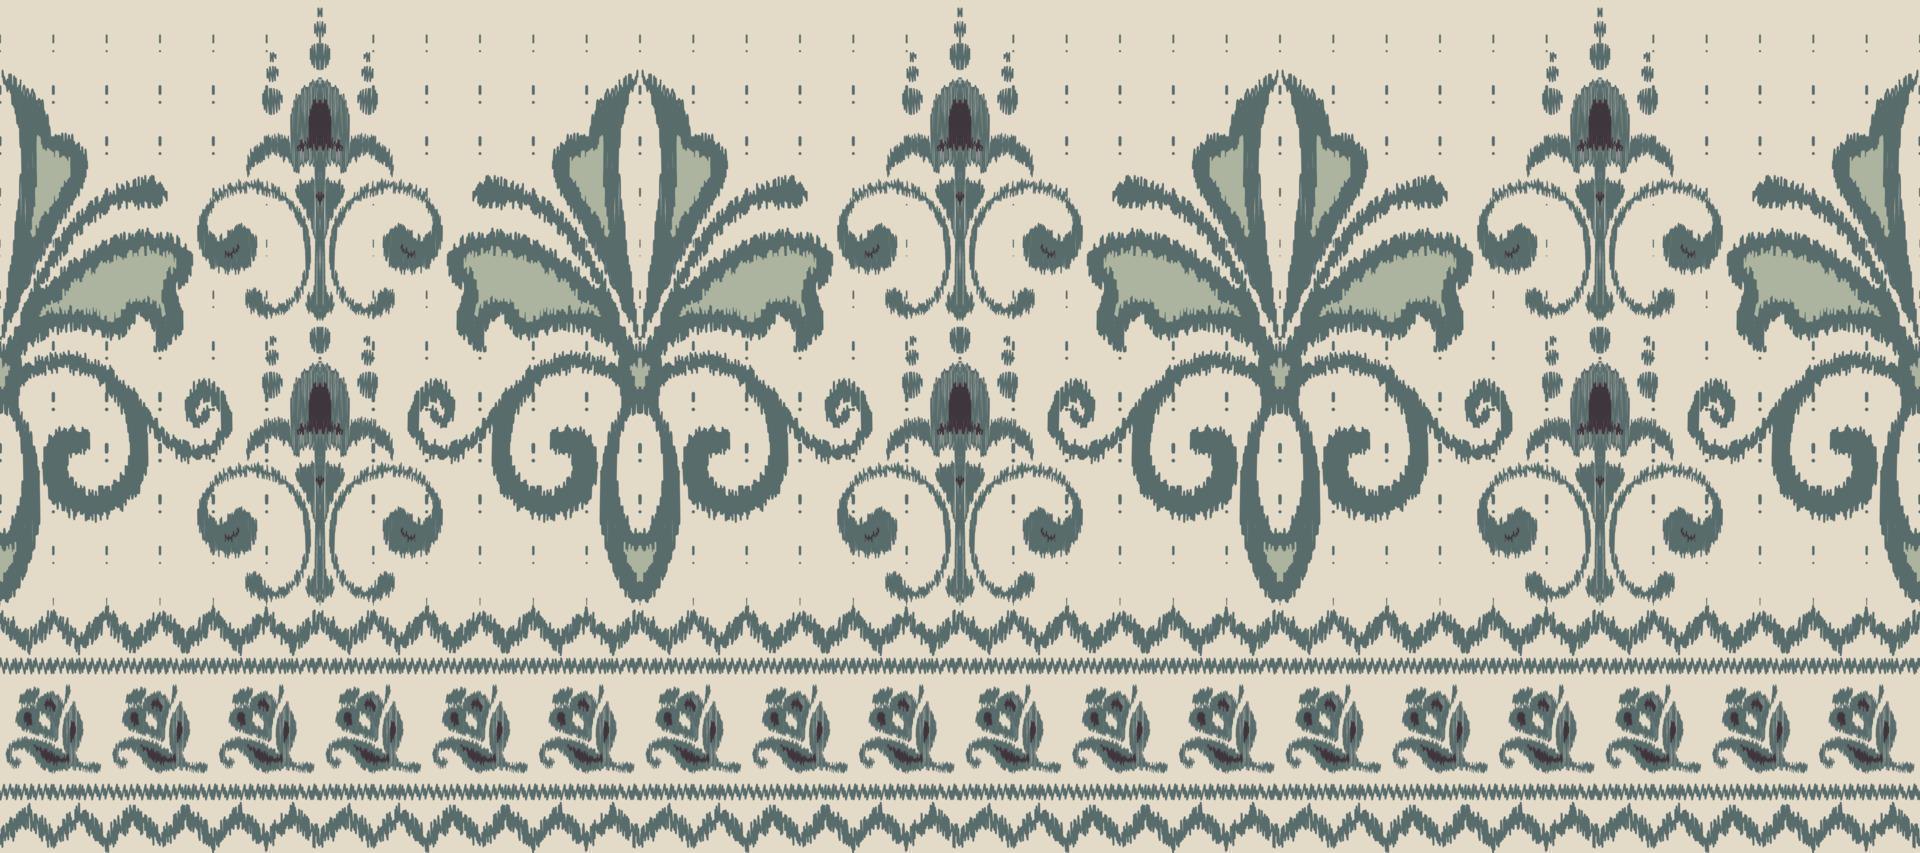 africain ikat floral paisley broderie Contexte. géométrique ethnique Oriental modèle traditionnel. ikat aztèque style abstrait vecteur illustration. conception pour impression texture, tissu, sari, sari, tapis.